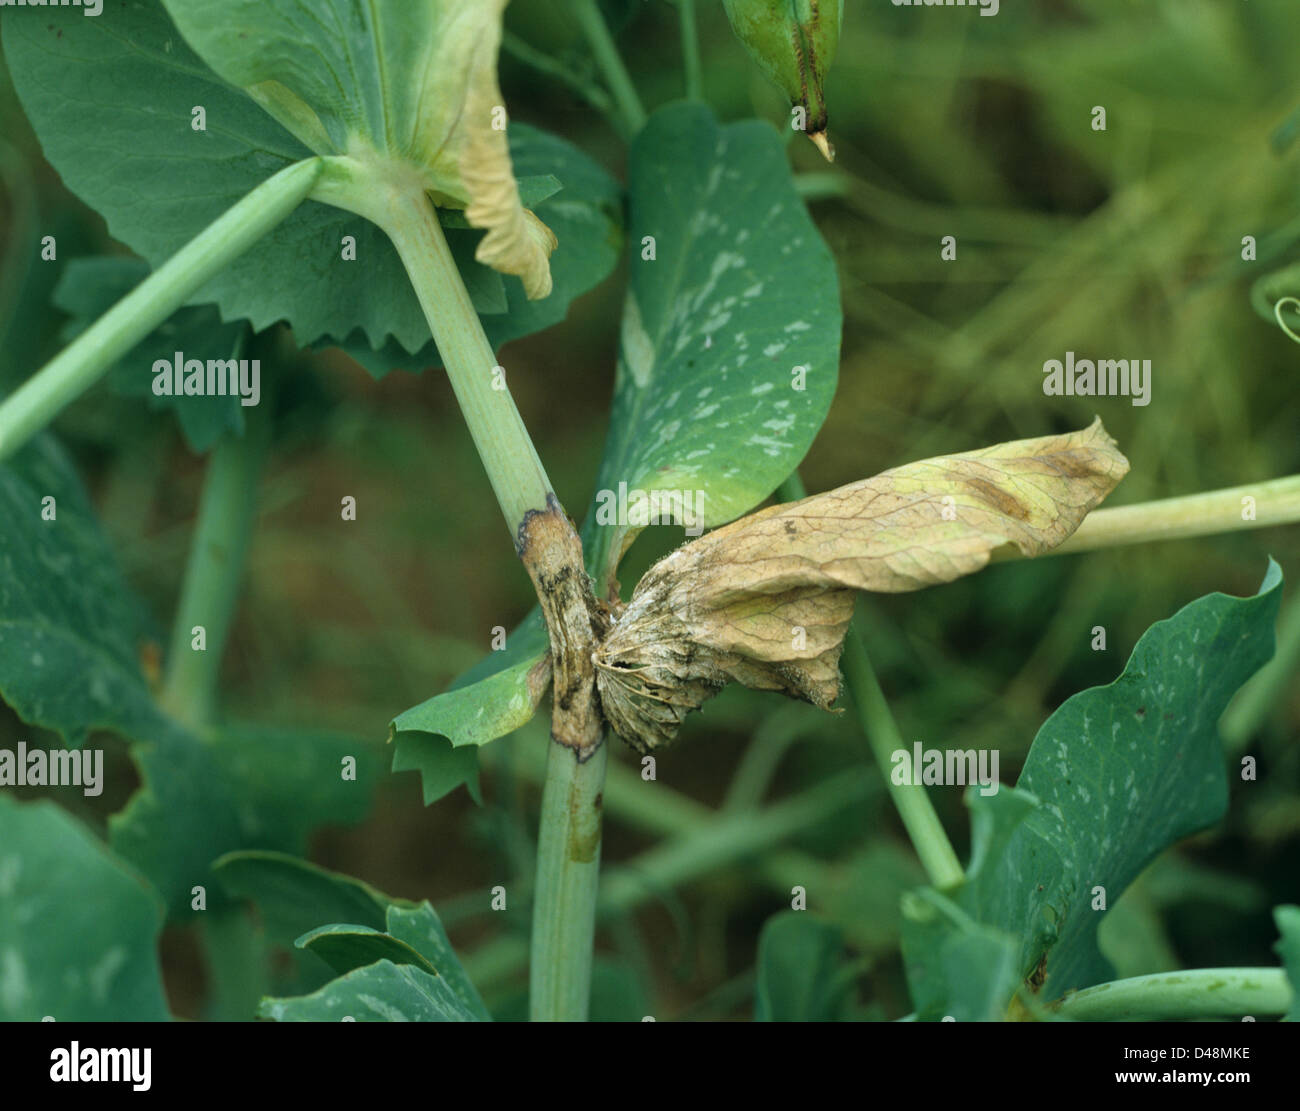 El moho gris, Botrytis cinerea, infección en el tallo y hojas de una planta de guisantes axial Foto de stock